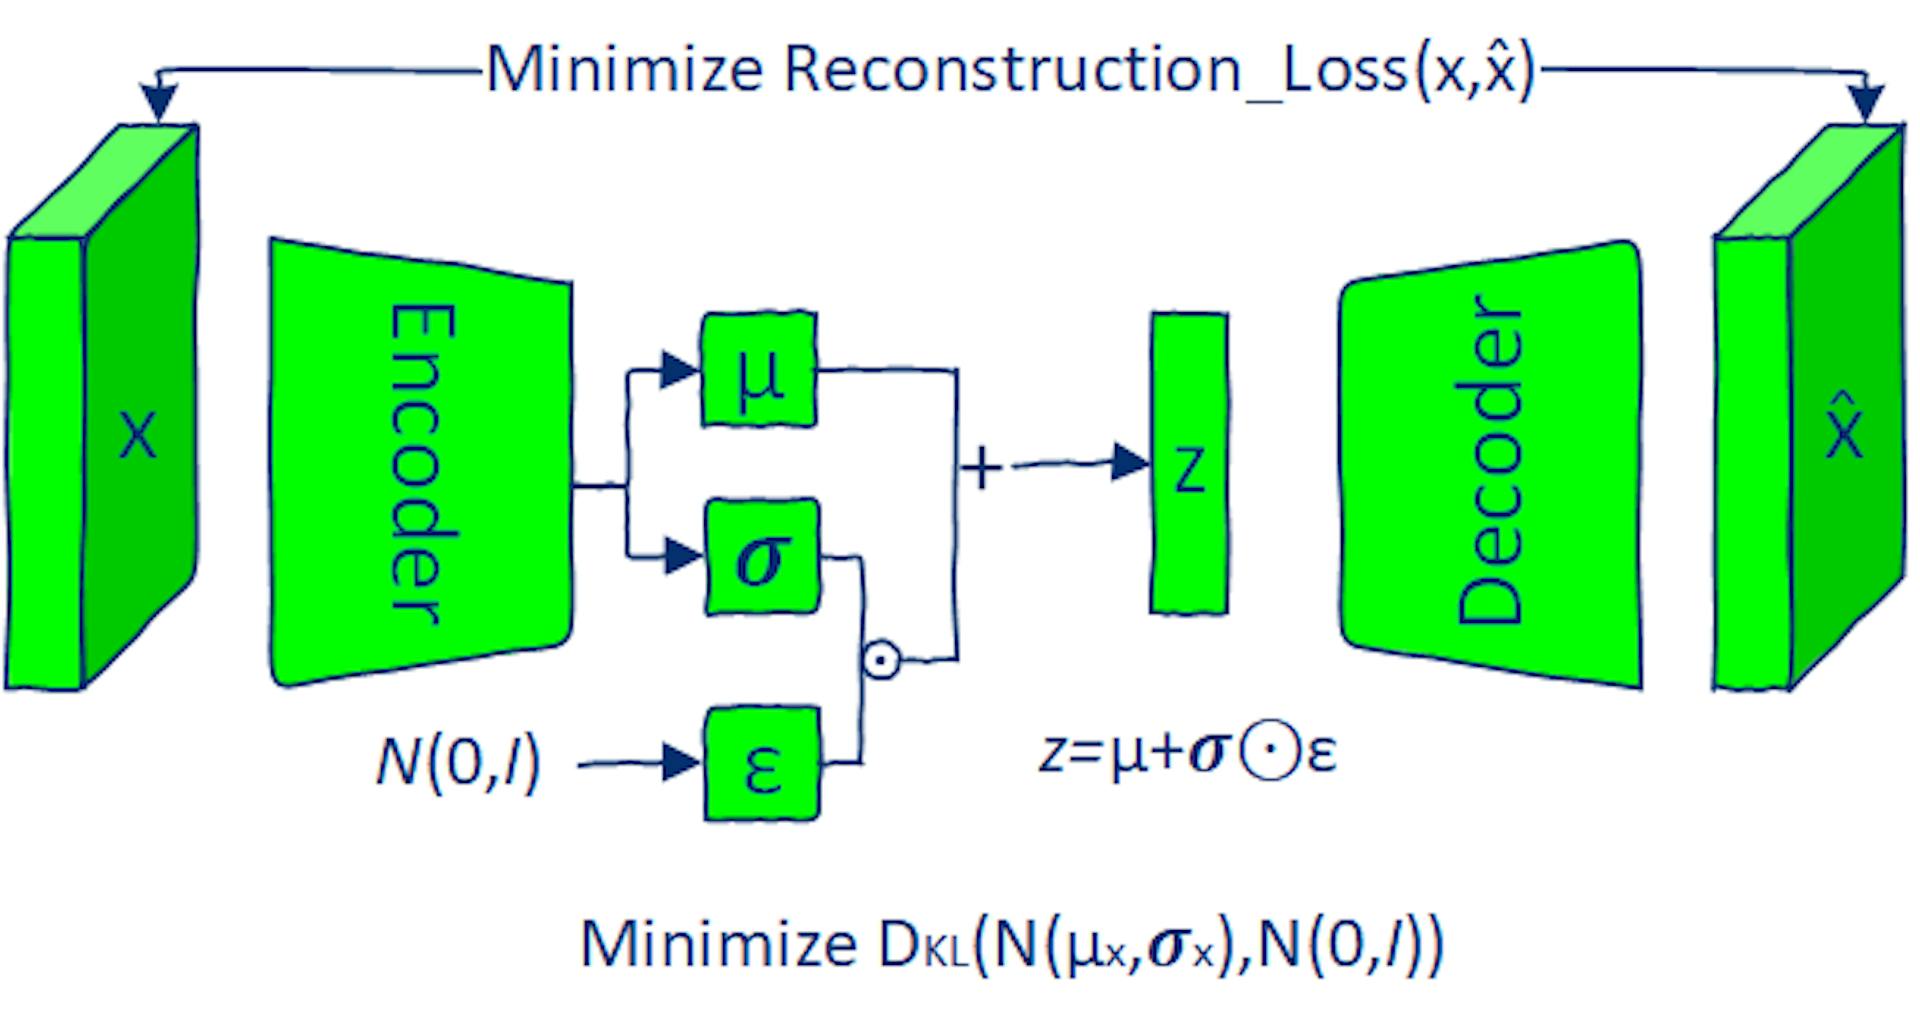 O modelo VAE é treinado minimizando a perda de reconstrução e a perda de divergência KL